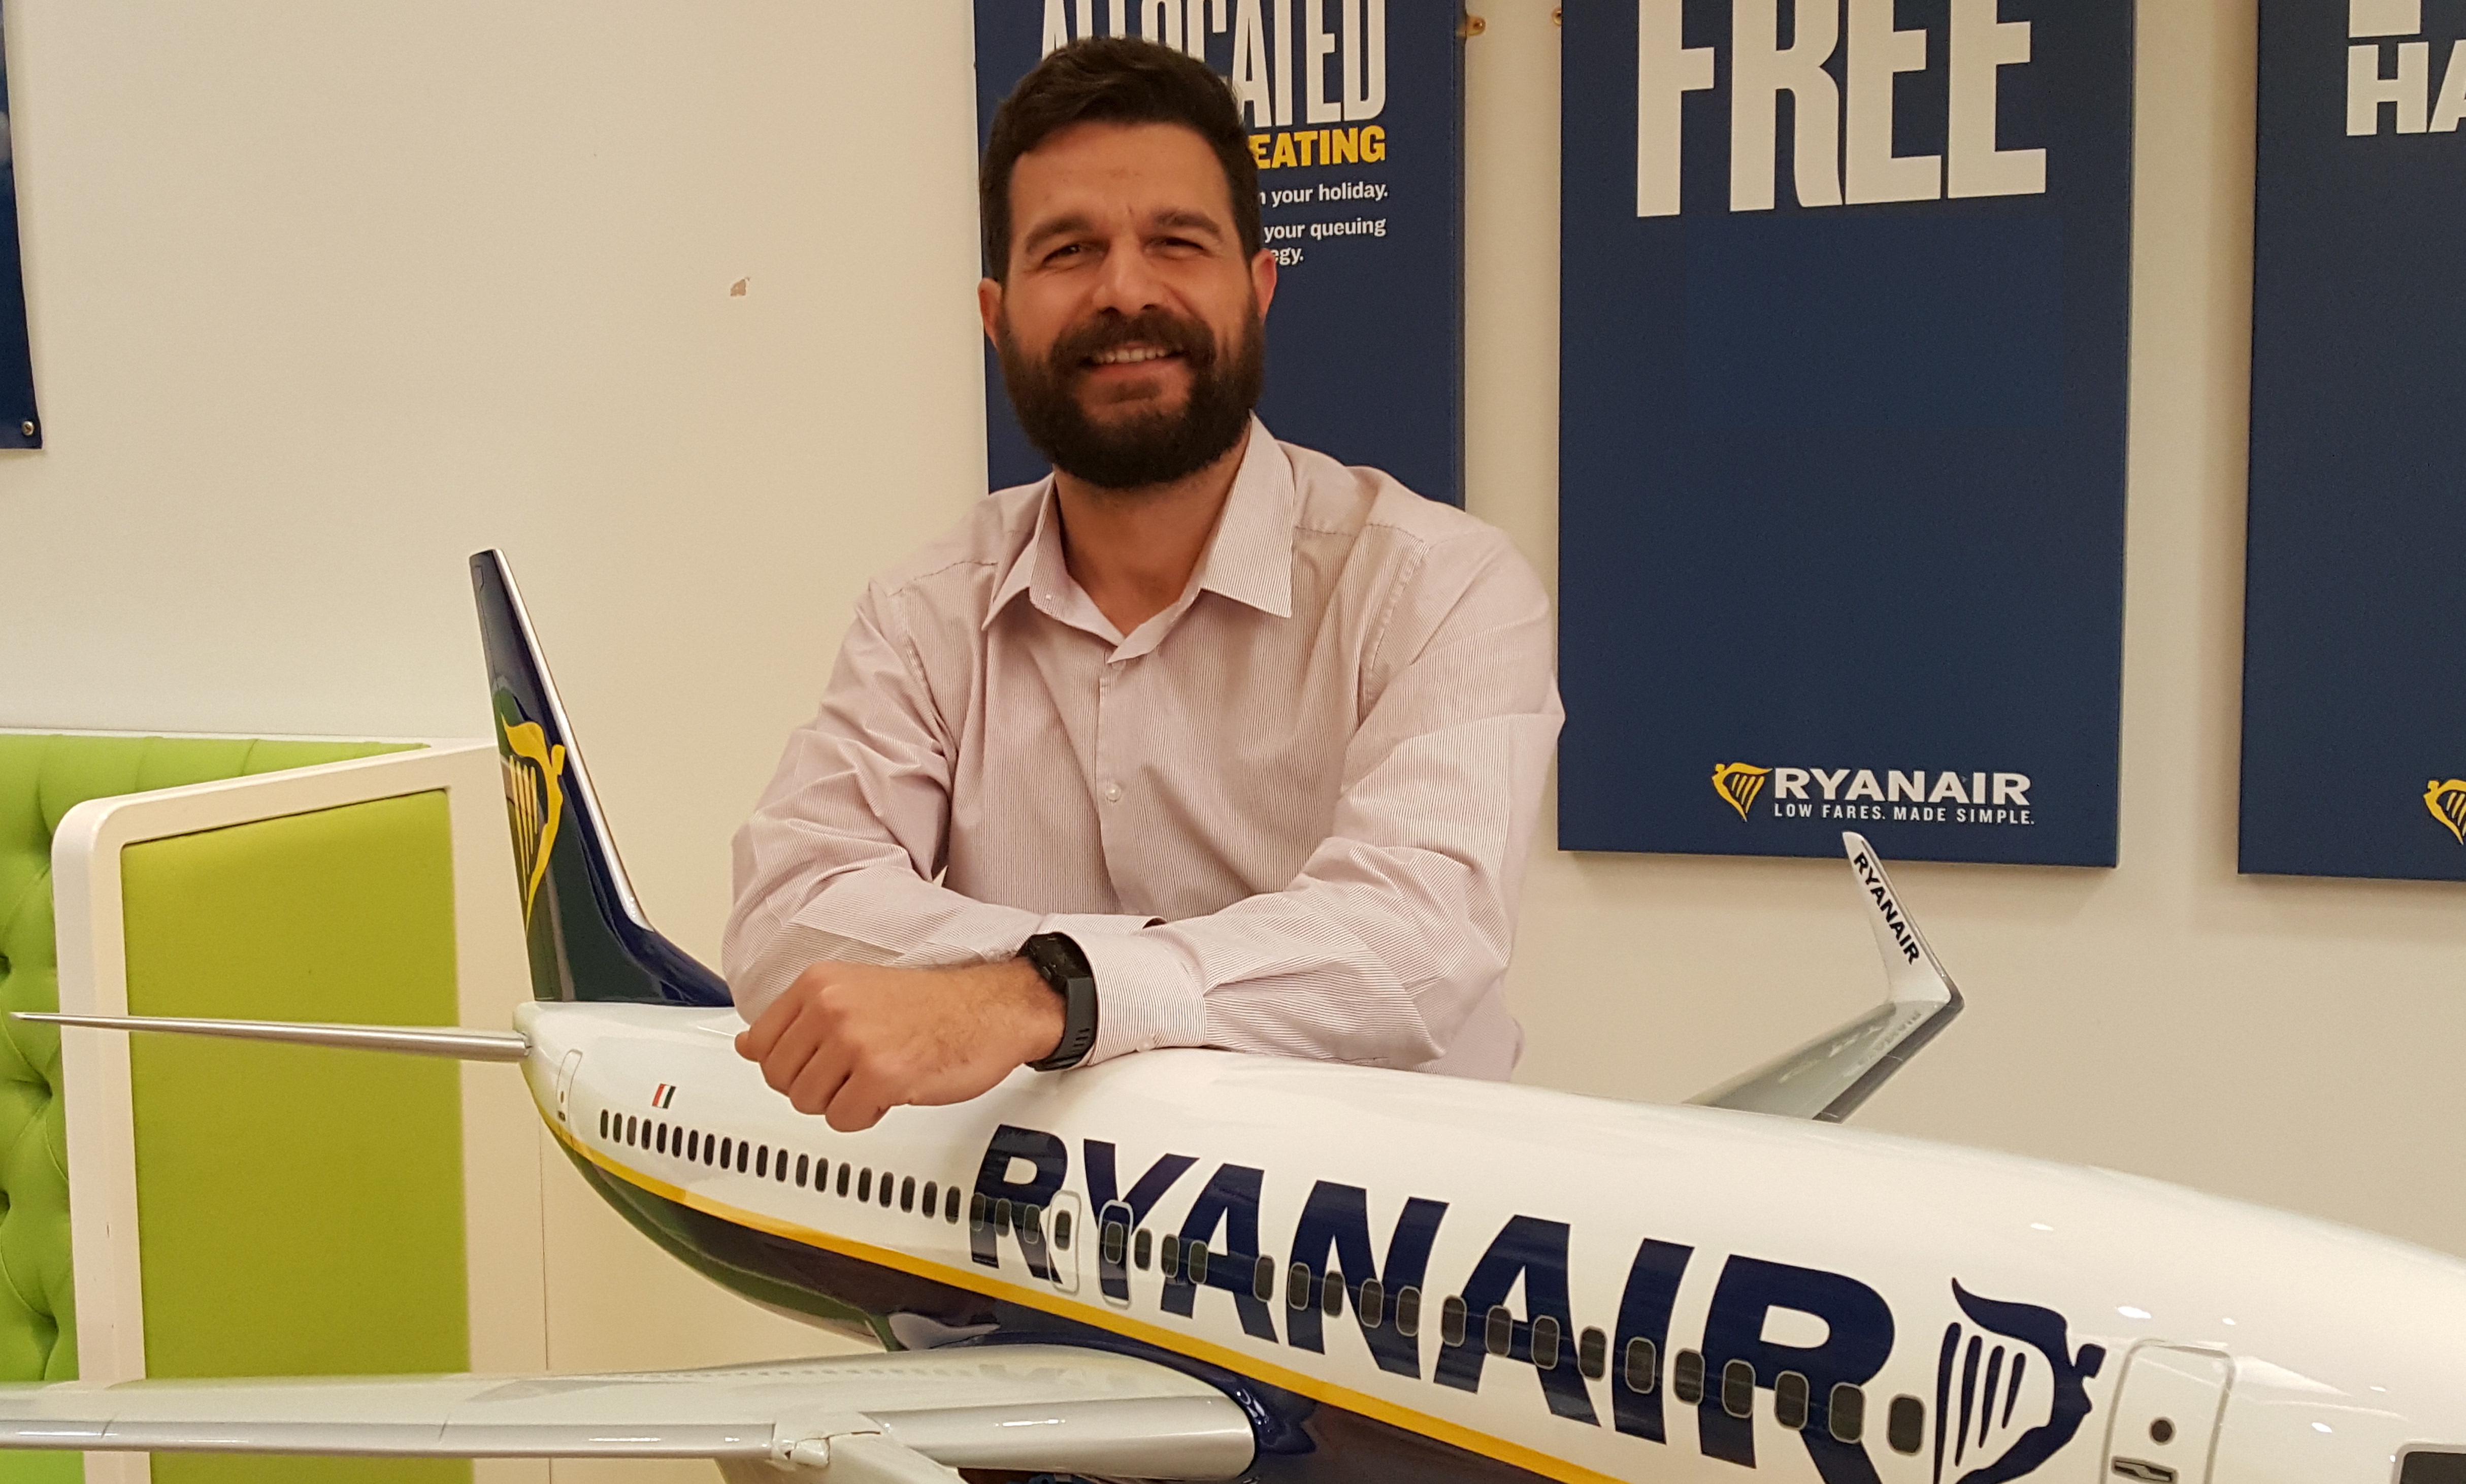 Η Ryanair Διοριζει Τον Νικολα Λαρδη Sales & Marketing Manager Ανατολικησ Μεσογειου